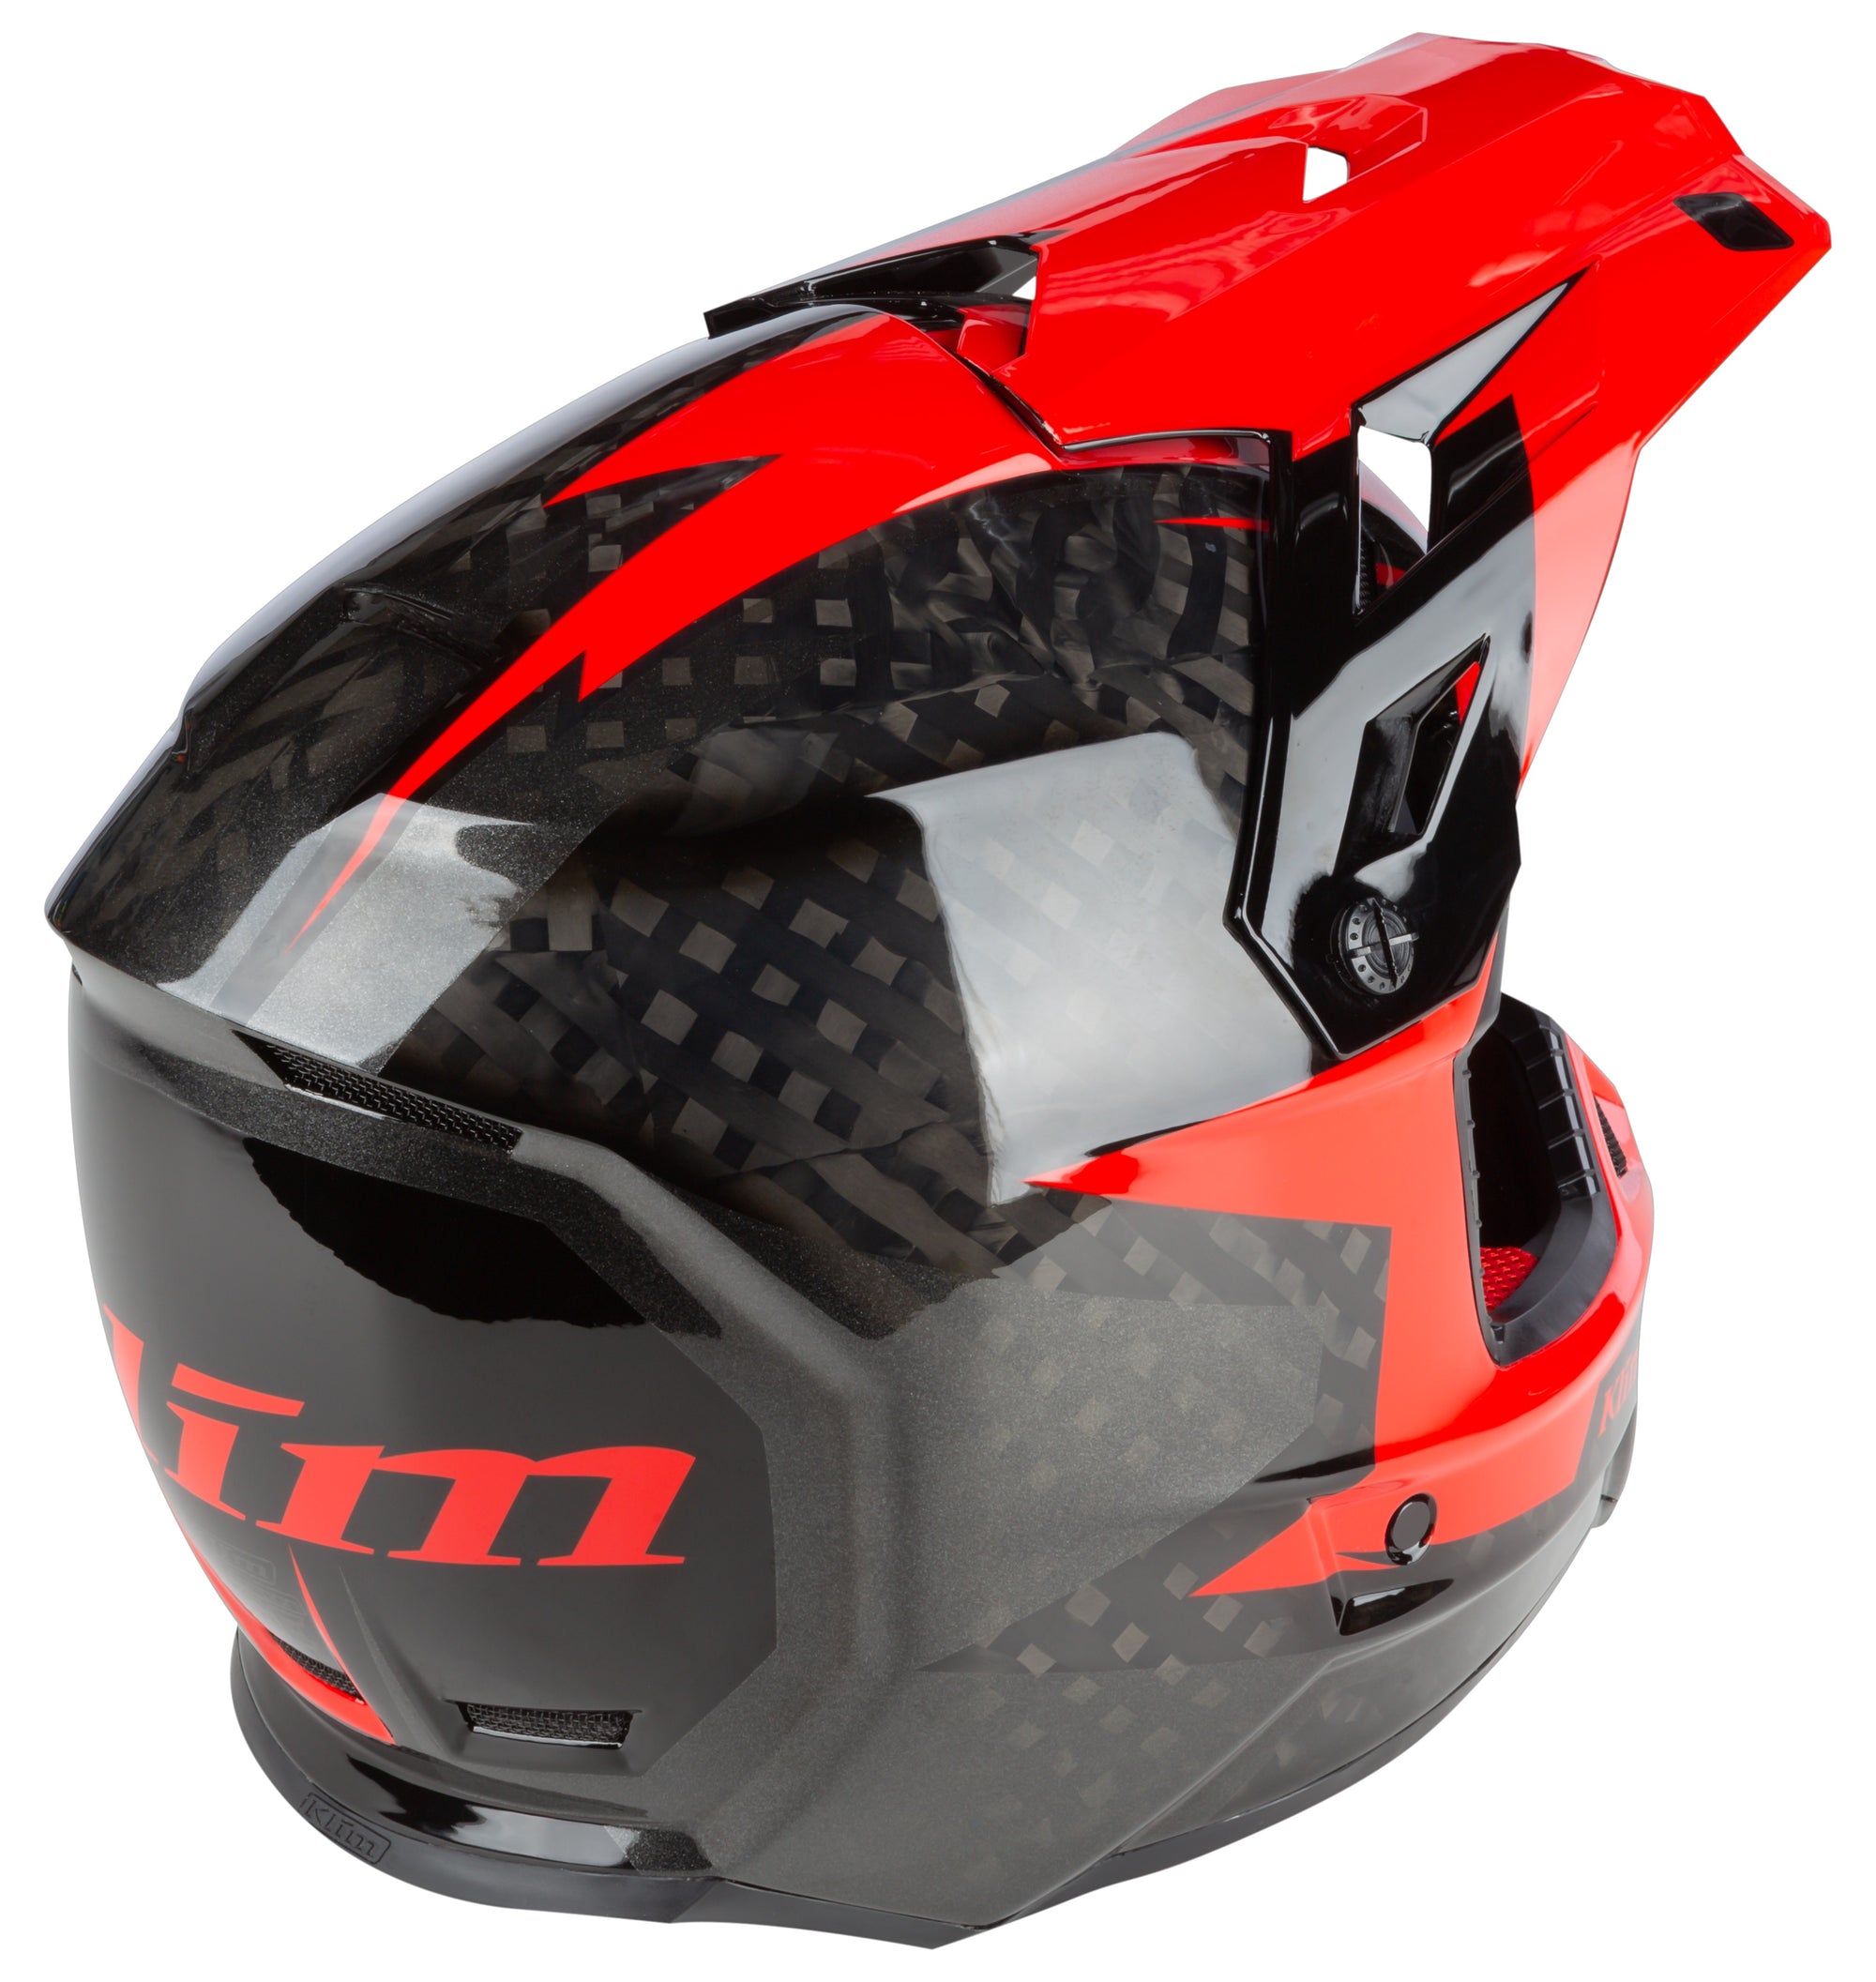 KLIM F3 Carbon Helmet ECE - 3761-000 - The Parts Lodge